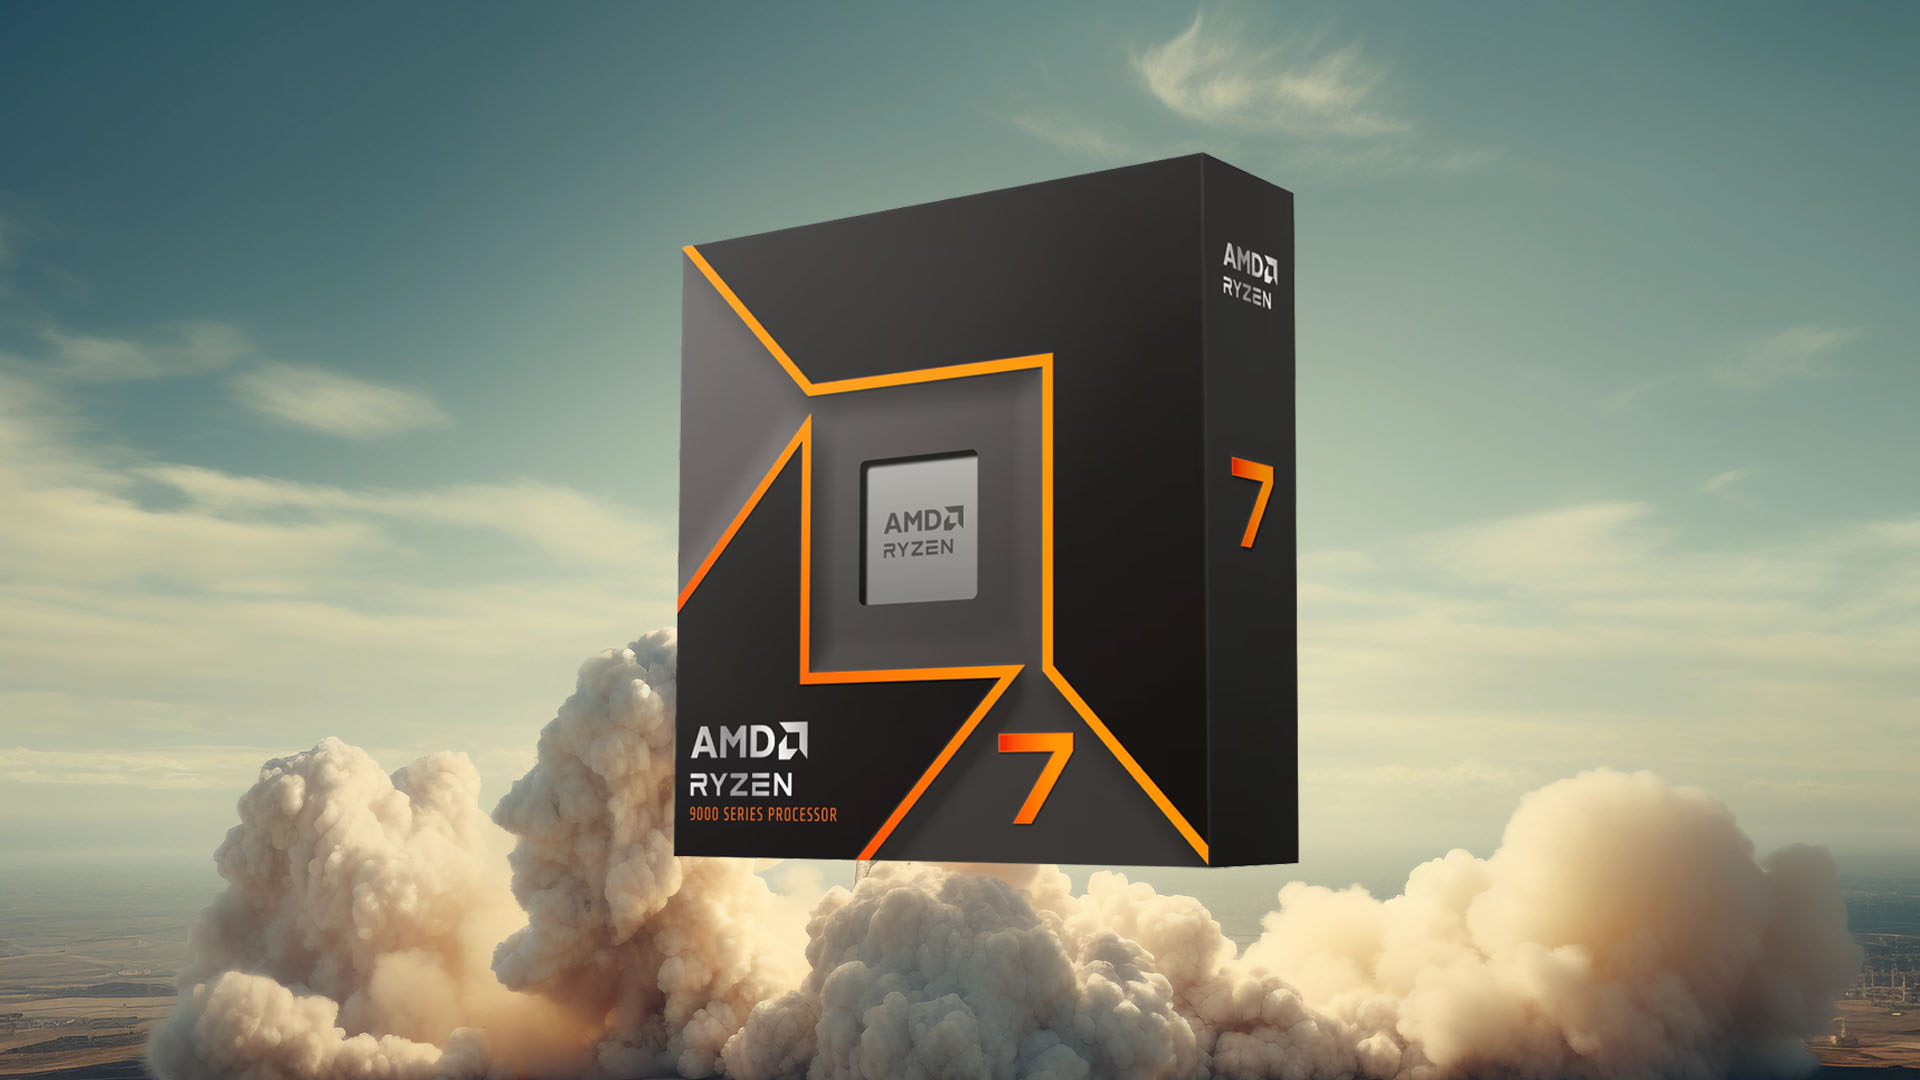 AMD’nin Ryzen 9700X’i 7800X3D’yi yenecek performans artışı sağlayabilir